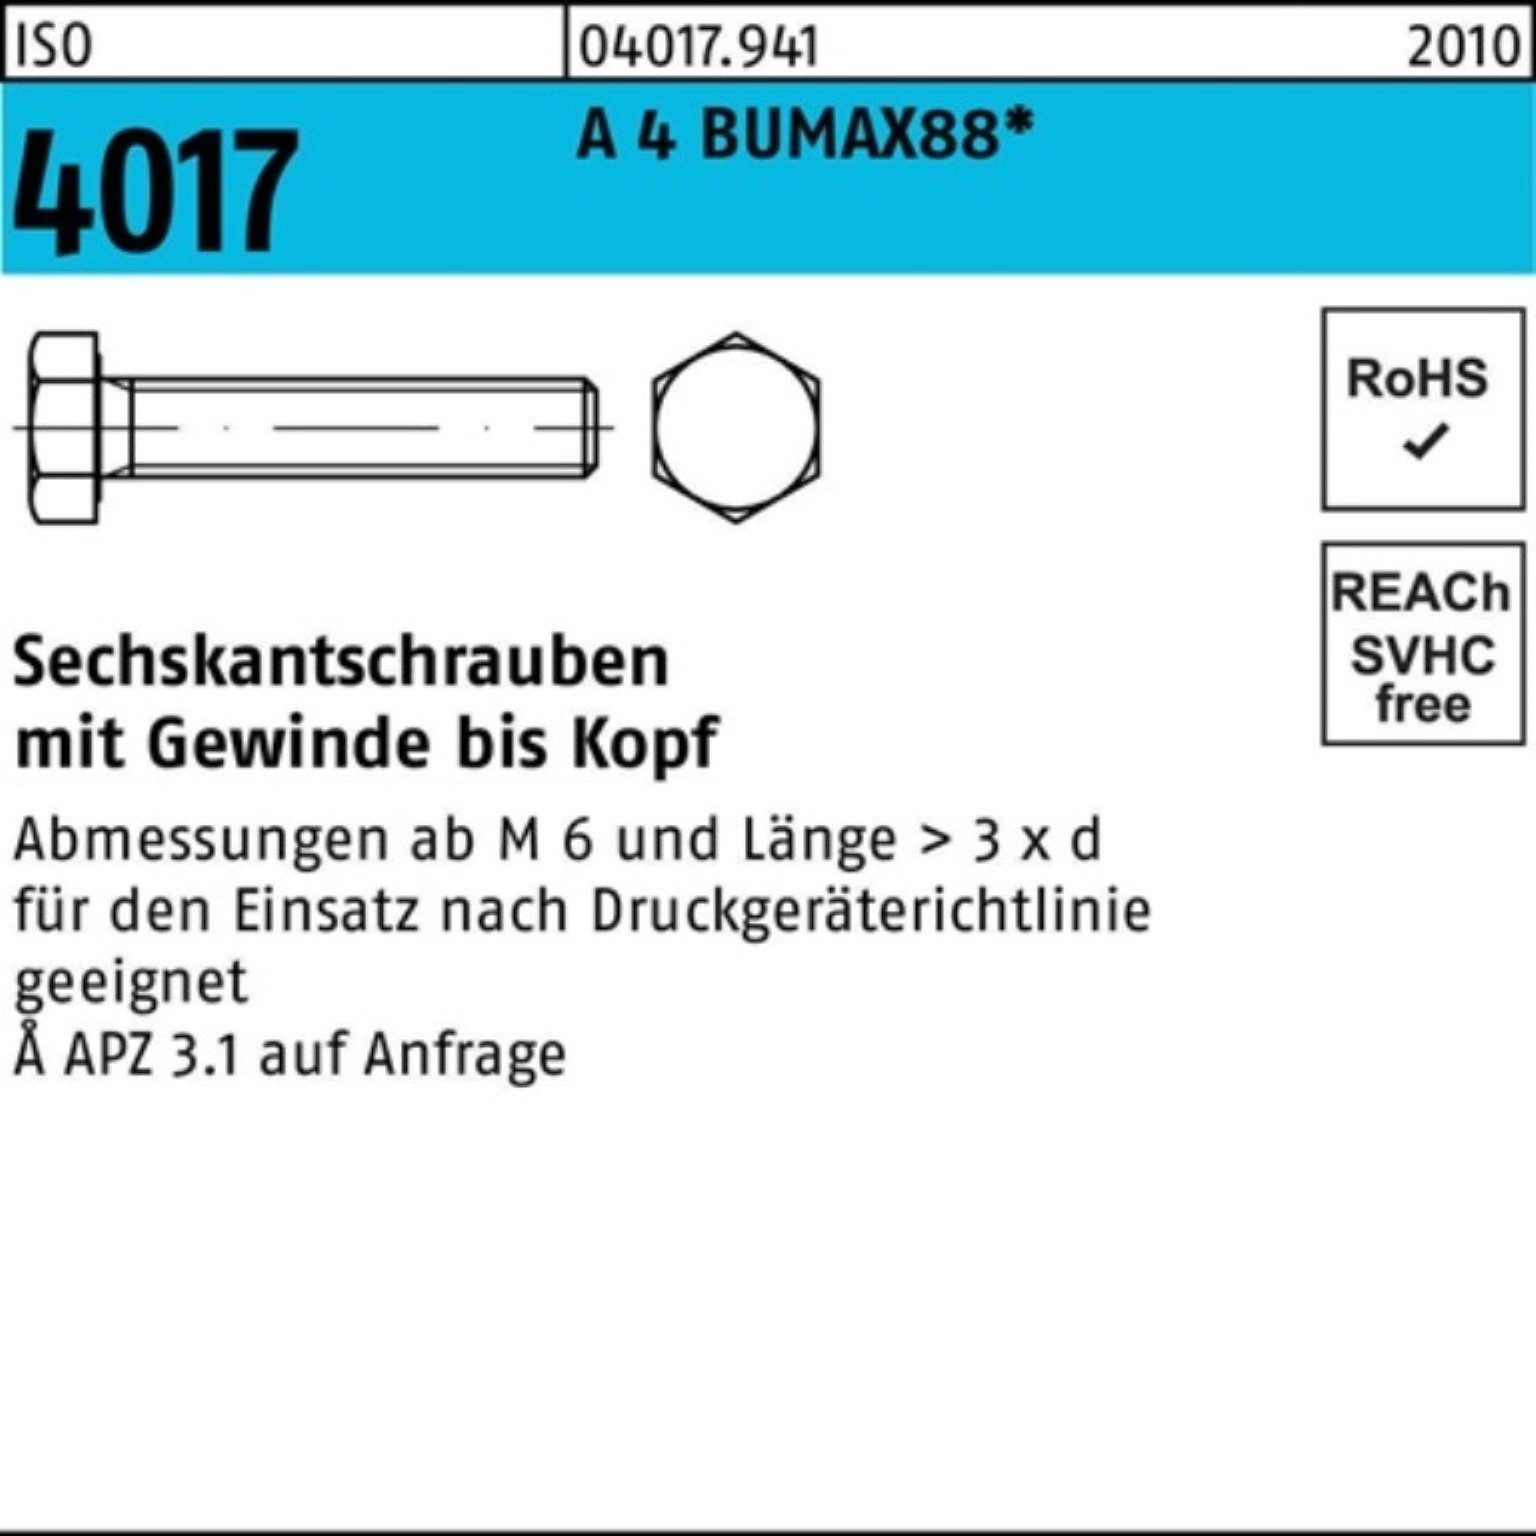 A 100 Sechskantschraube Bufab 4 ISO Sechskantschraube Pack 30 BUMAX88 VG M6x 100er 4017 Stück